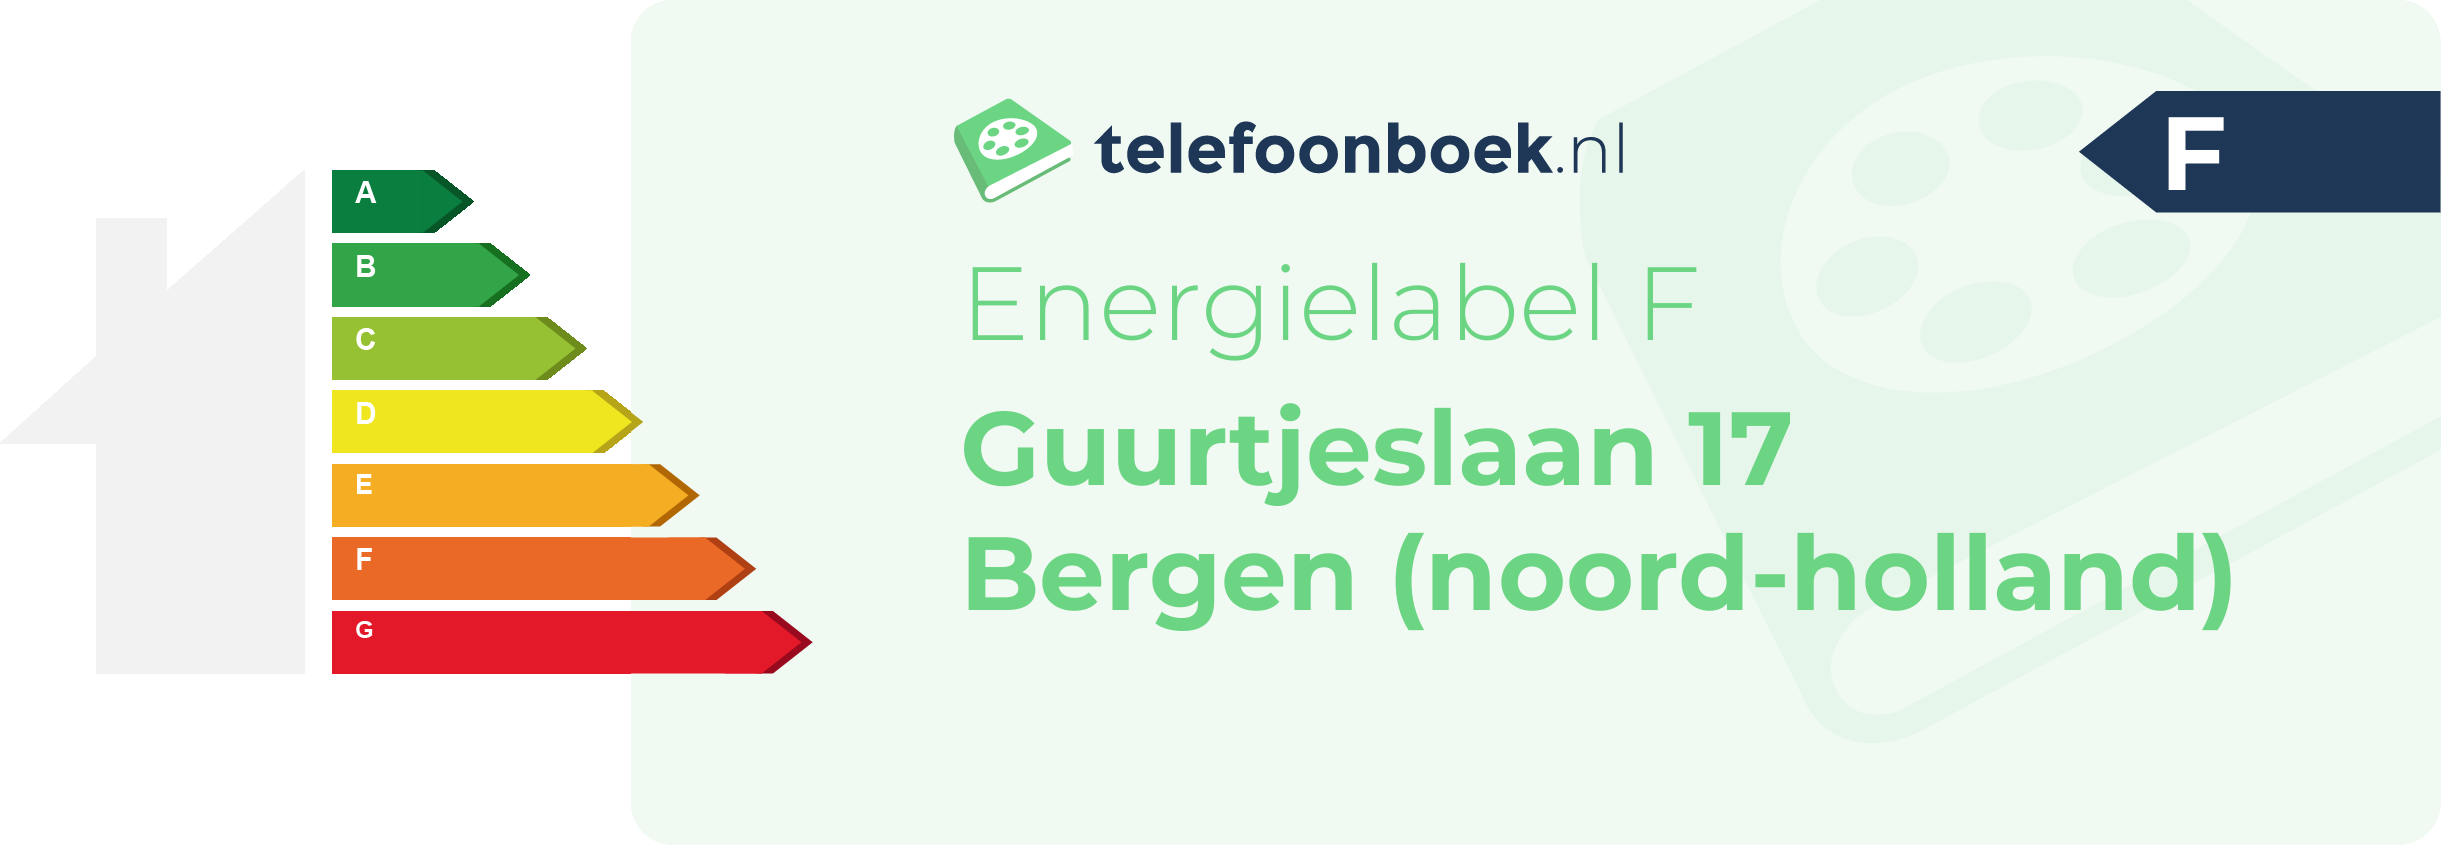 Energielabel Guurtjeslaan 17 Bergen (Noord-Holland)